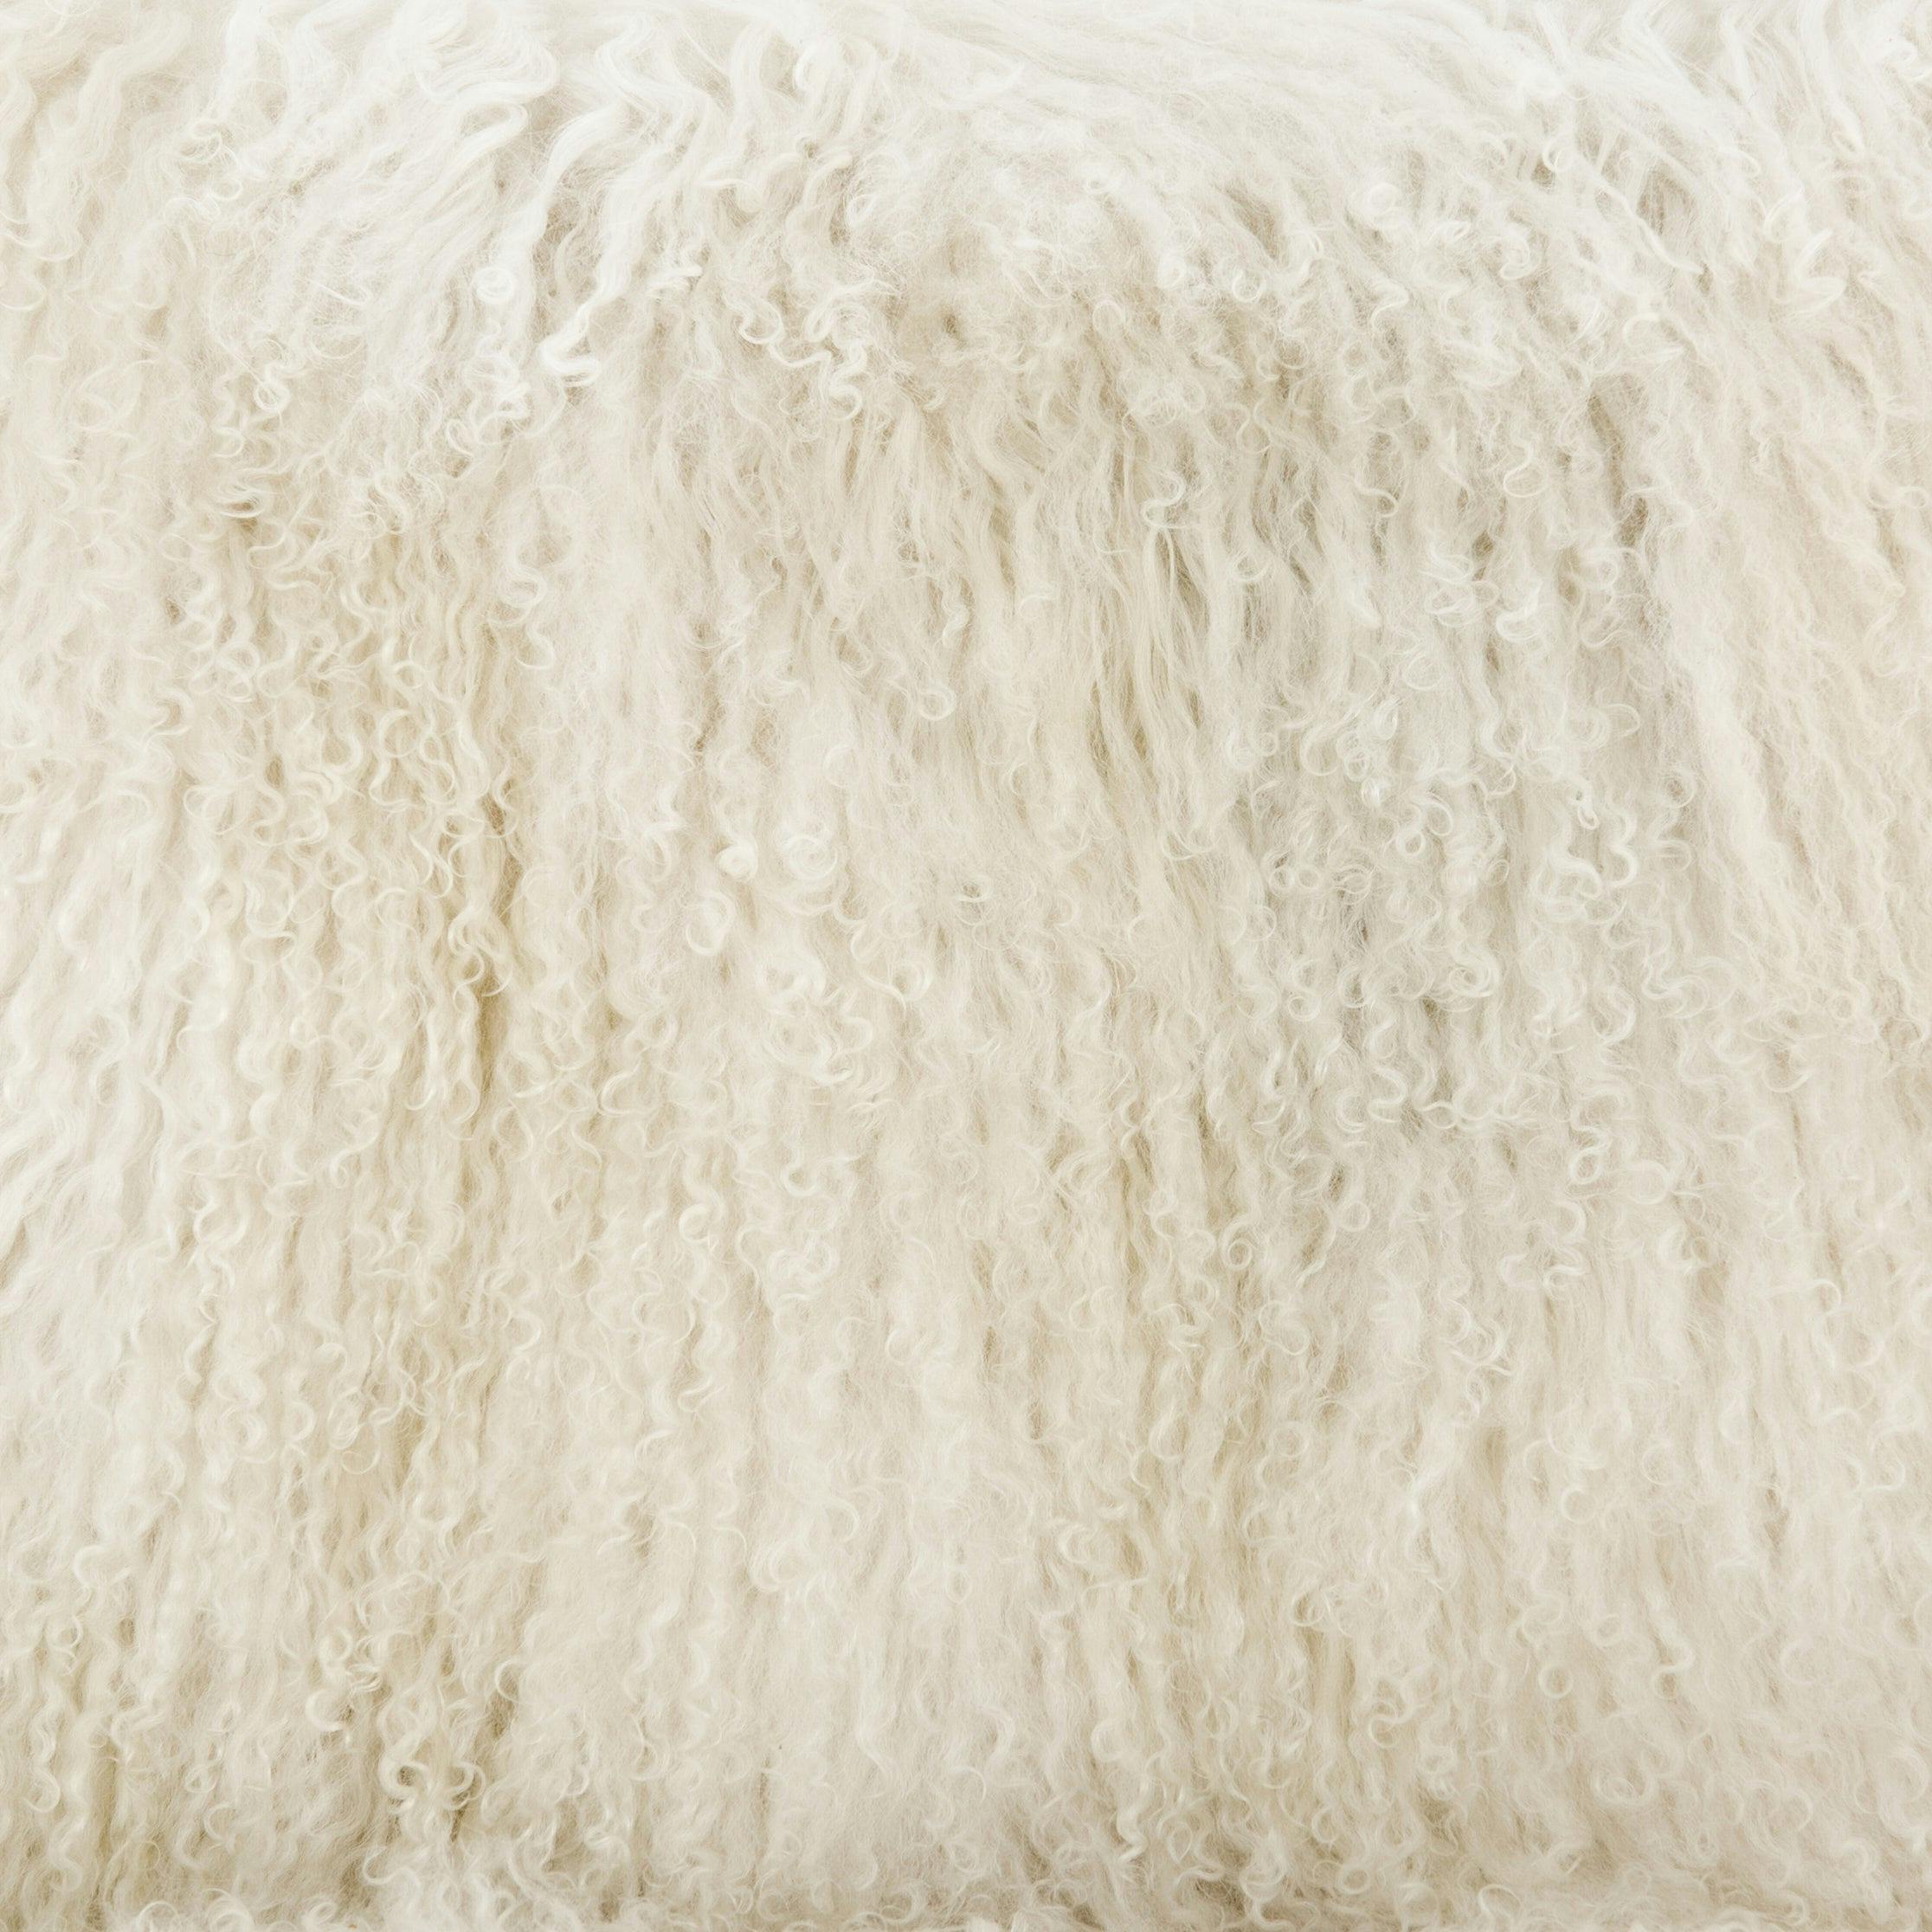 Drifted Oak Frame Cream Mongolian Fur 24.5" Accent Chair